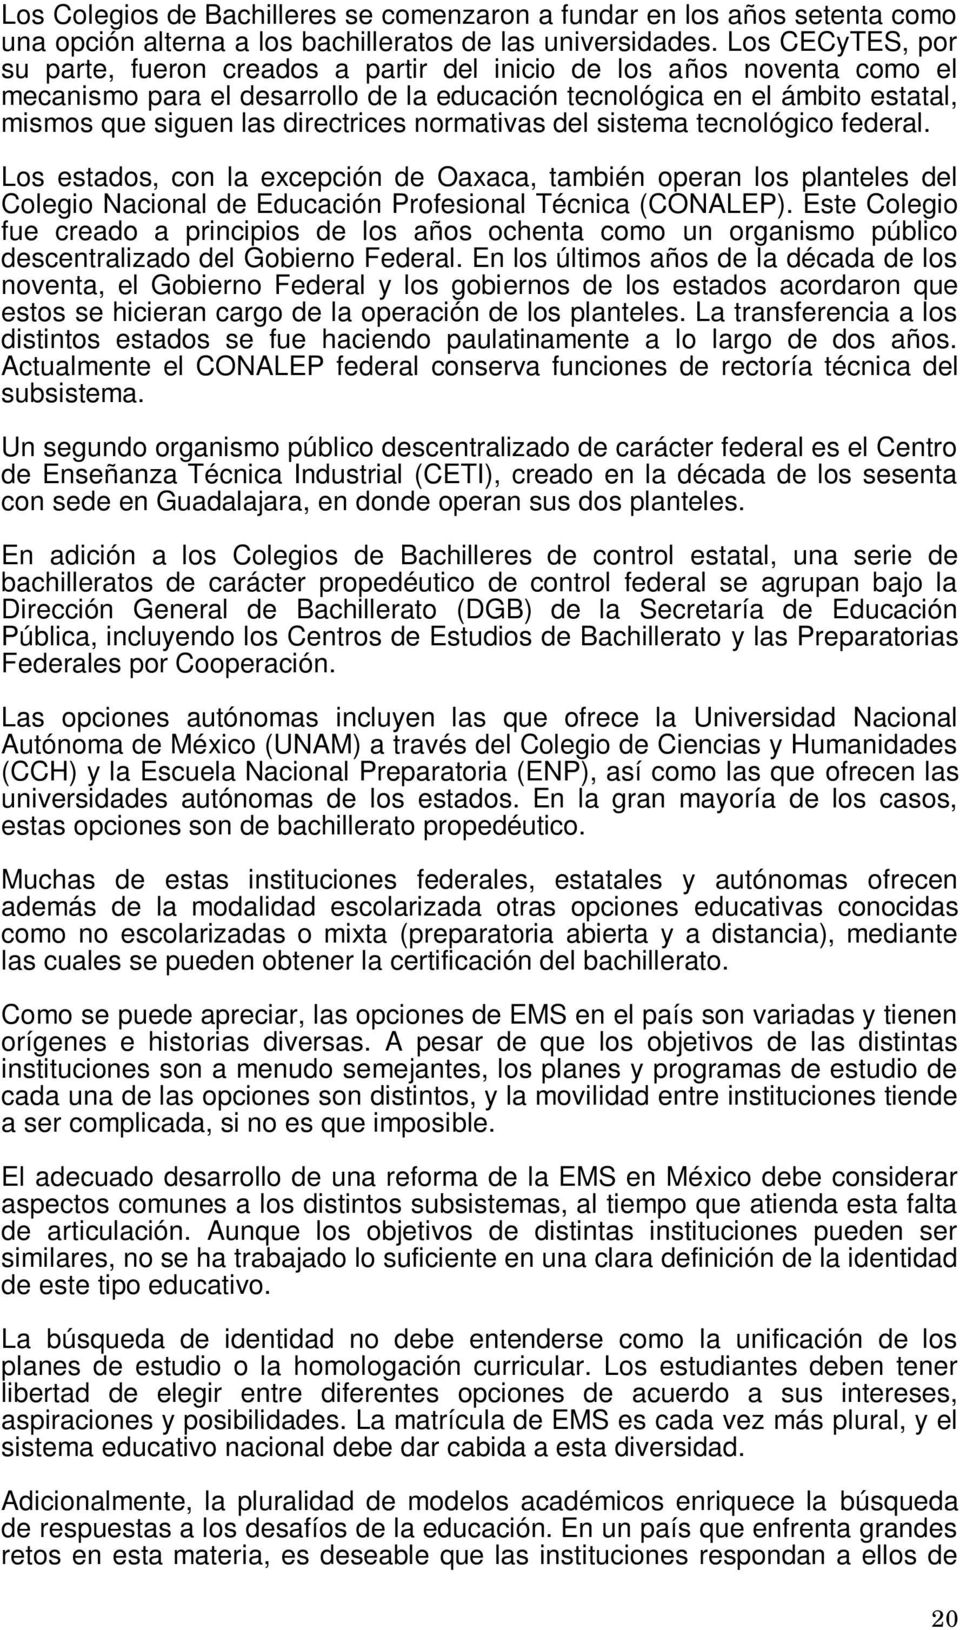 directrices normativas del sistema tecnológico federal. Los estados, con la excepción de Oaxaca, también operan los planteles del Colegio Nacional de Educación Profesional Técnica (CONALEP).